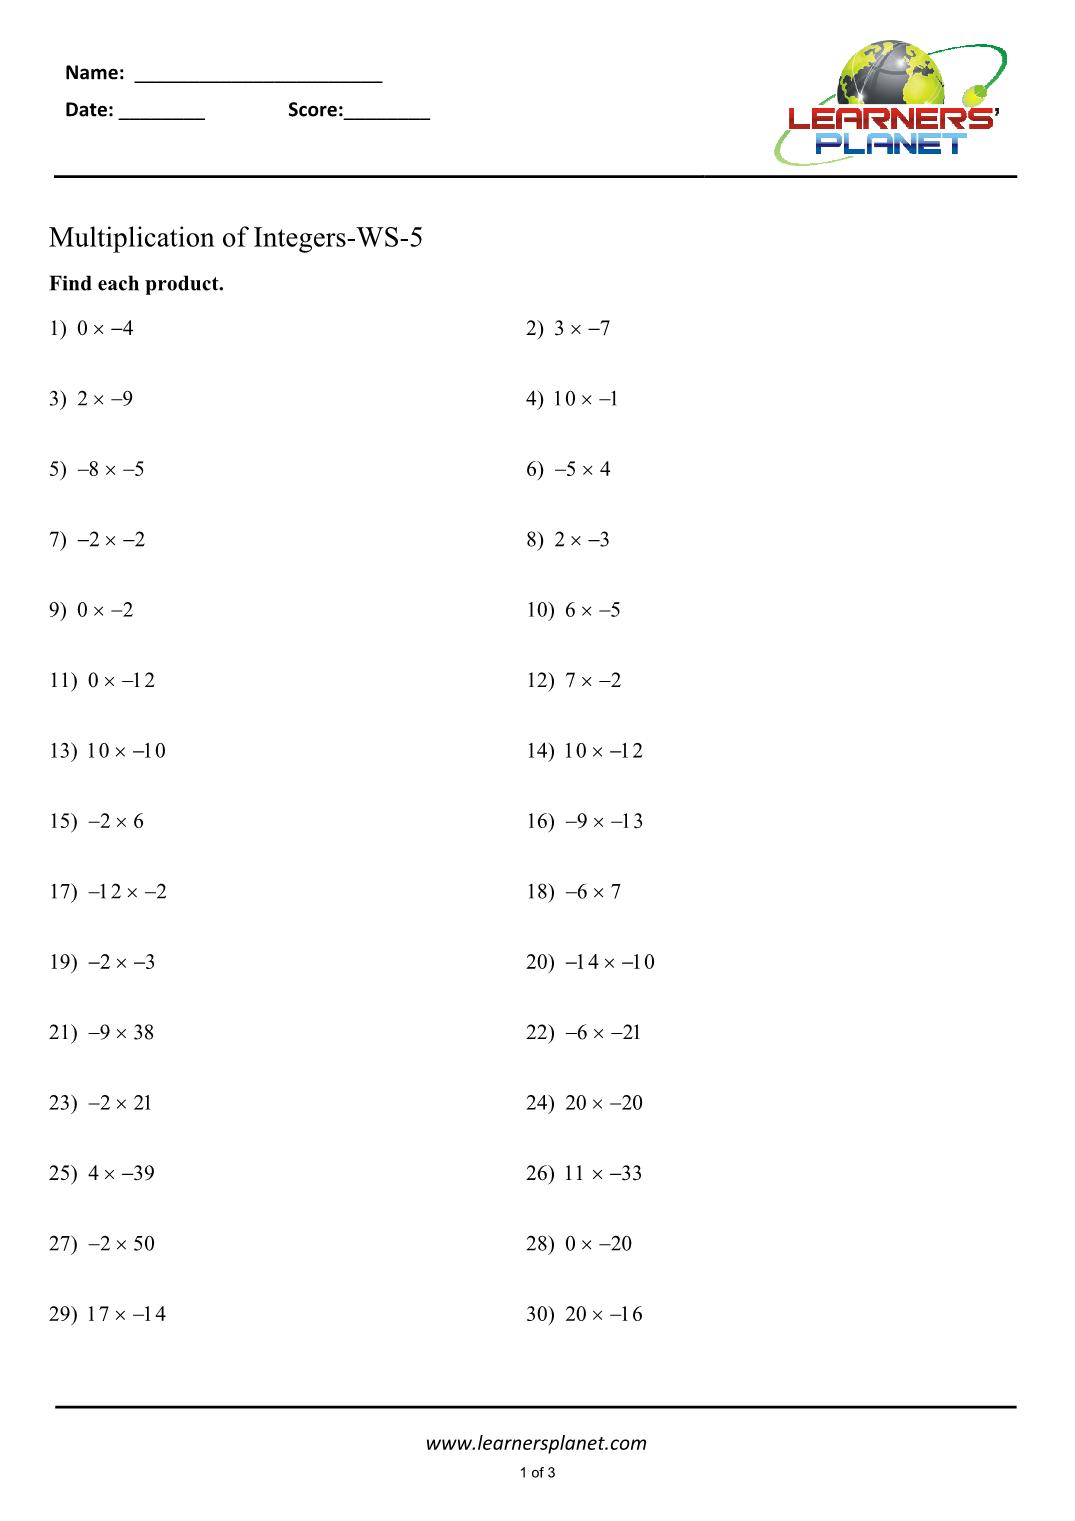 Multiplying integers worksheet grade 11 In Multiplication Of Integers Worksheet